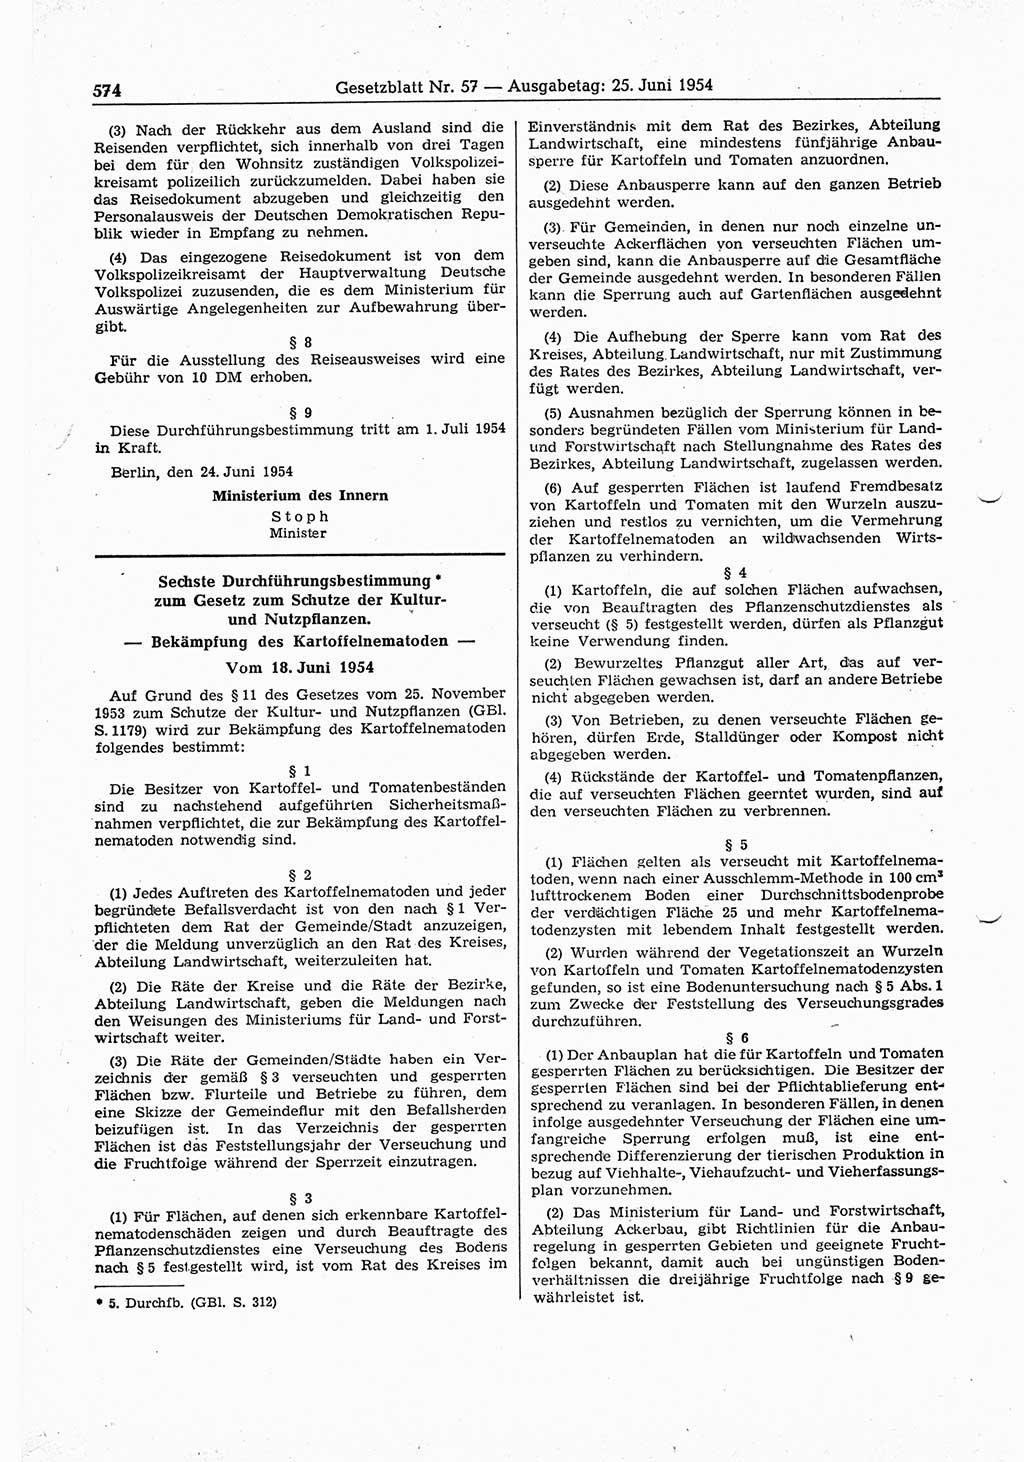 Gesetzblatt (GBl.) der Deutschen Demokratischen Republik (DDR) 1954, Seite 574 (GBl. DDR 1954, S. 574)